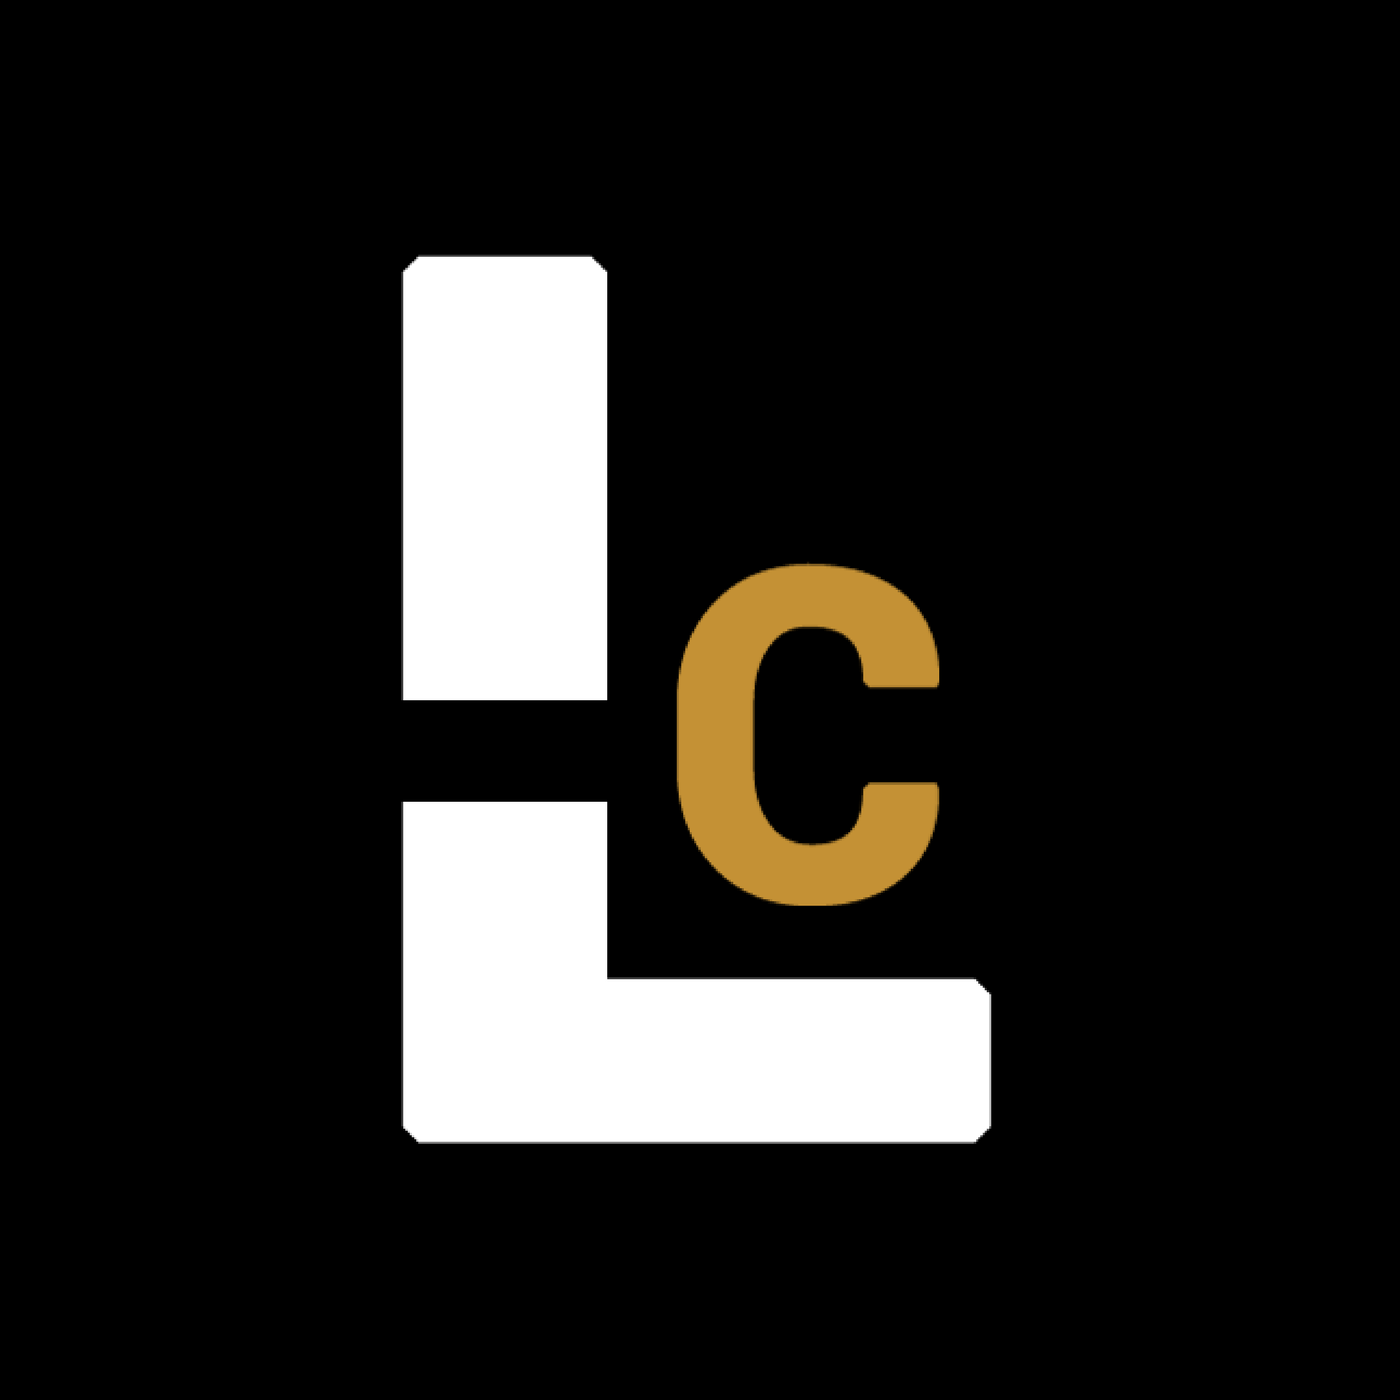 LC Logo - logo LC - Album on Imgur